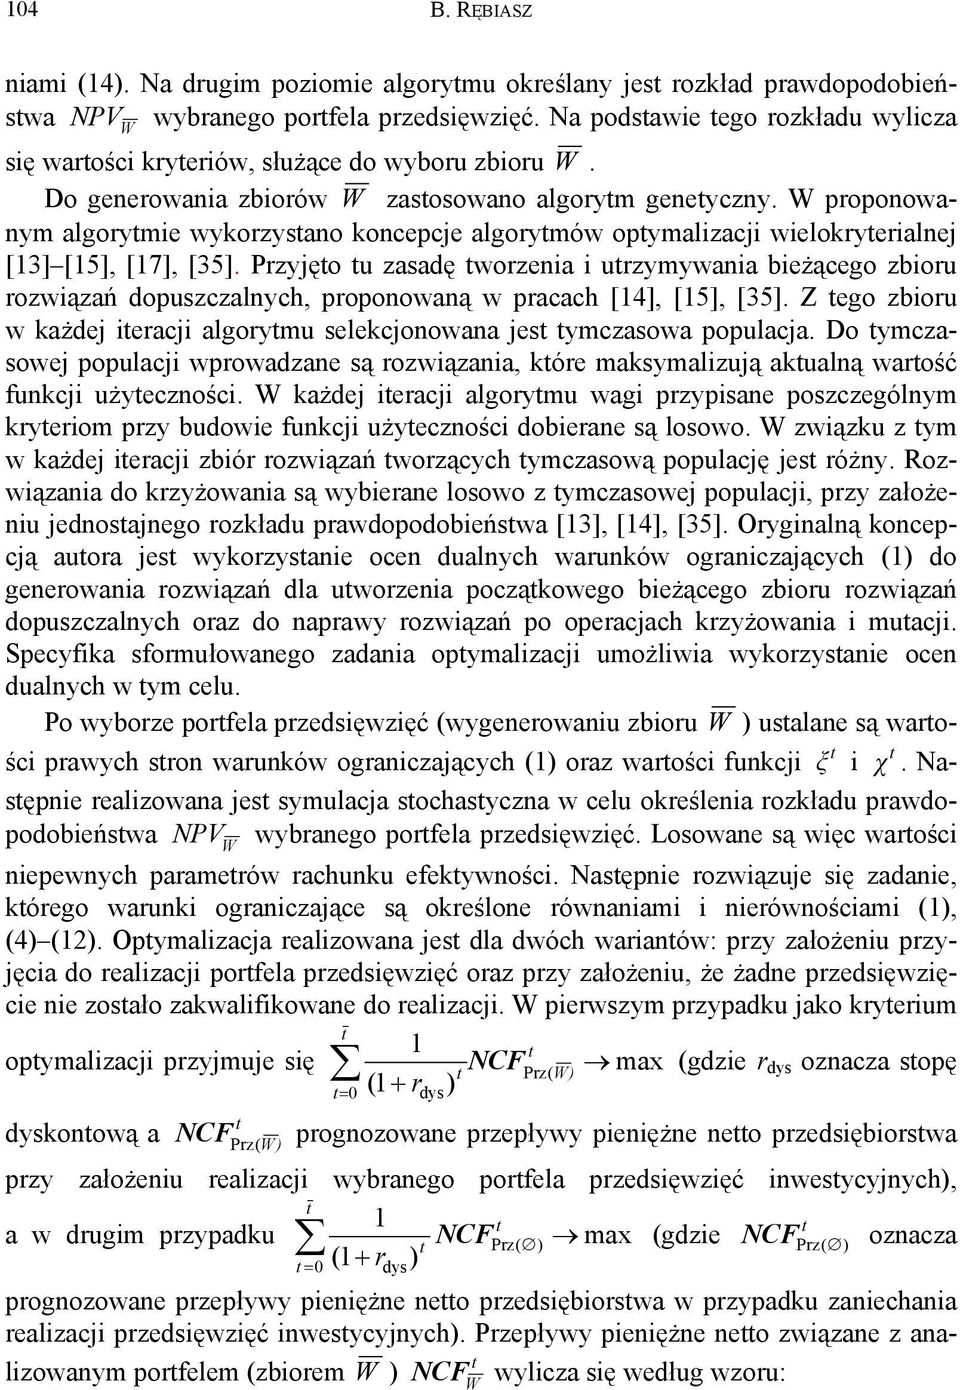 proponowanym algorymie wykorzysano koncepcje algorymów opymalizacji wielokryerialnej [13] [15], [17], [35].